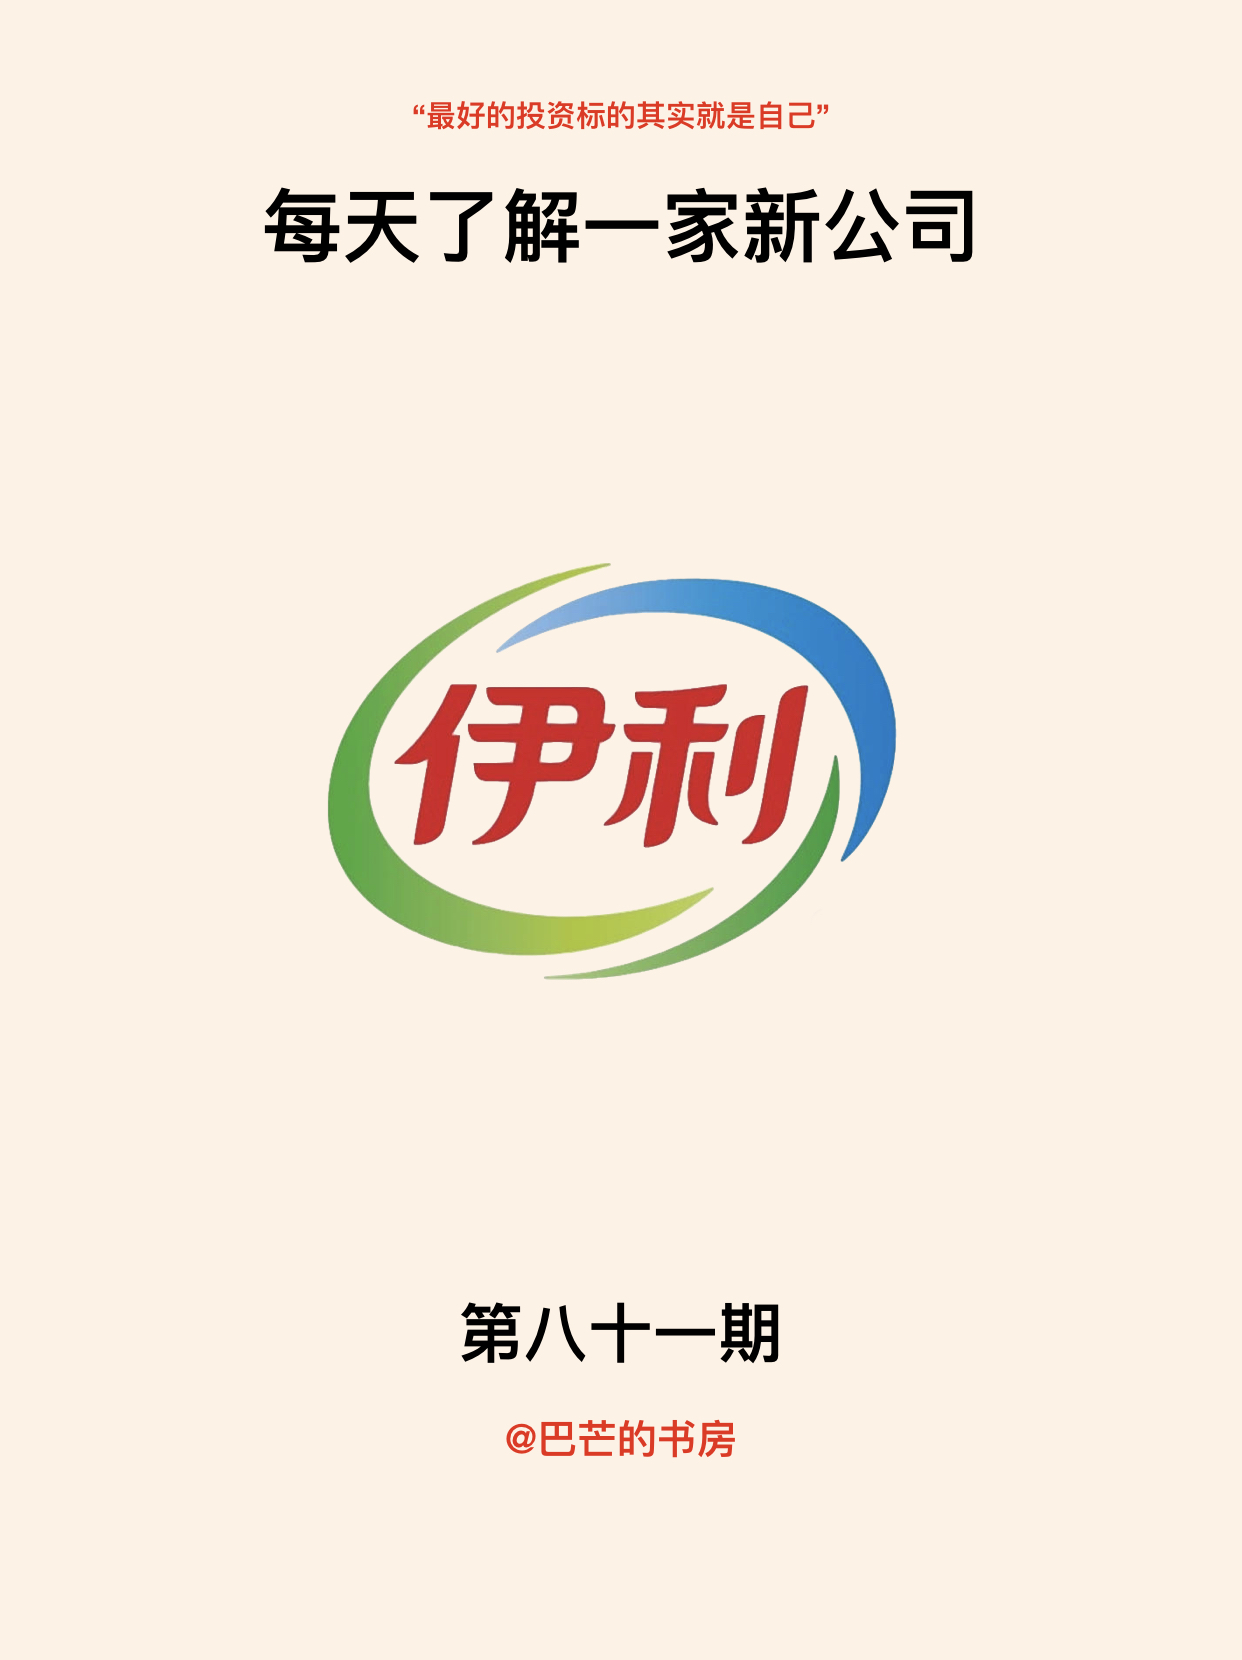 伊利集团logo图片